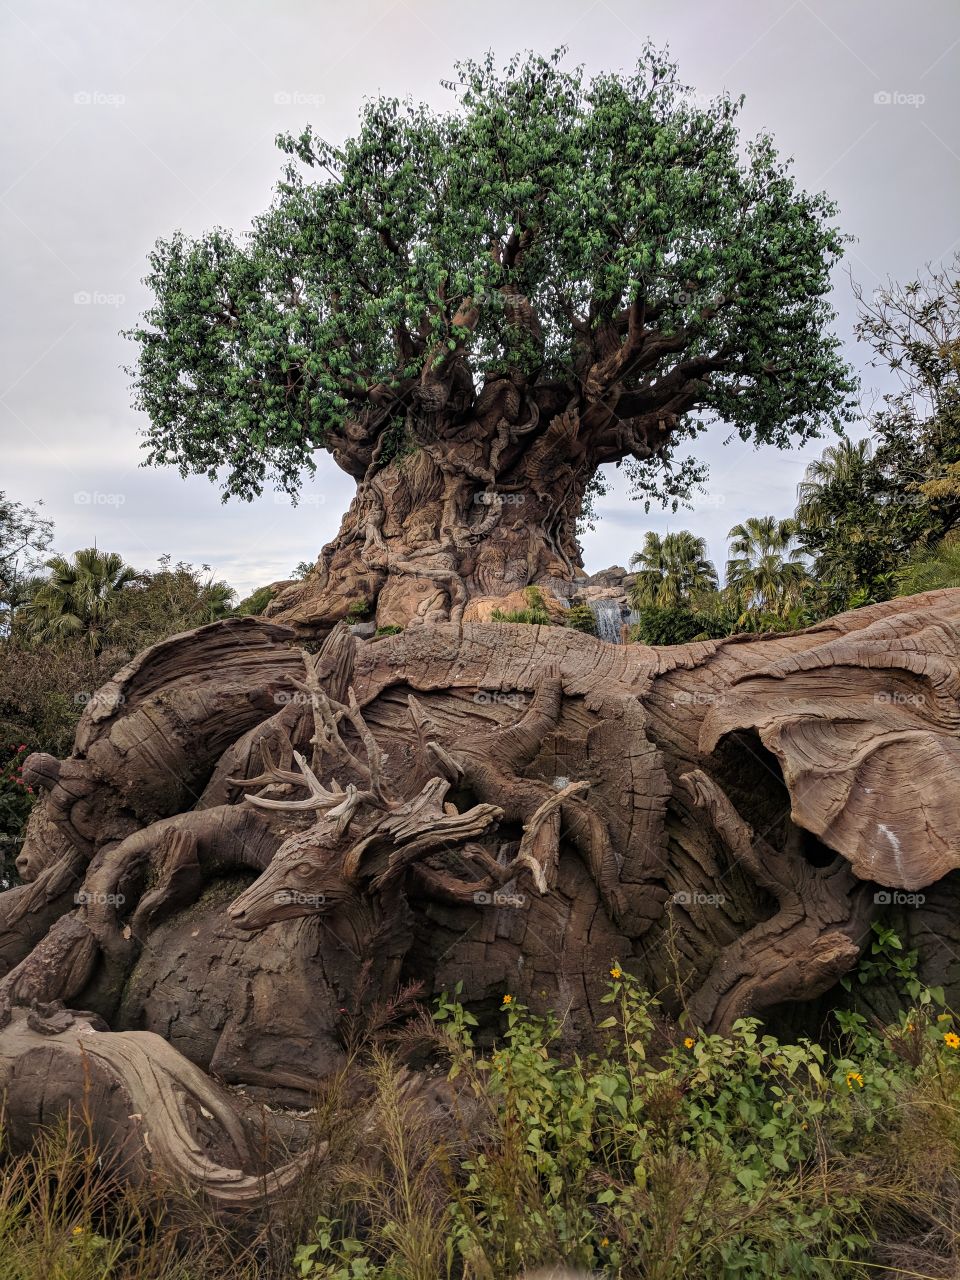 Tree Of Life Animal Kingdom